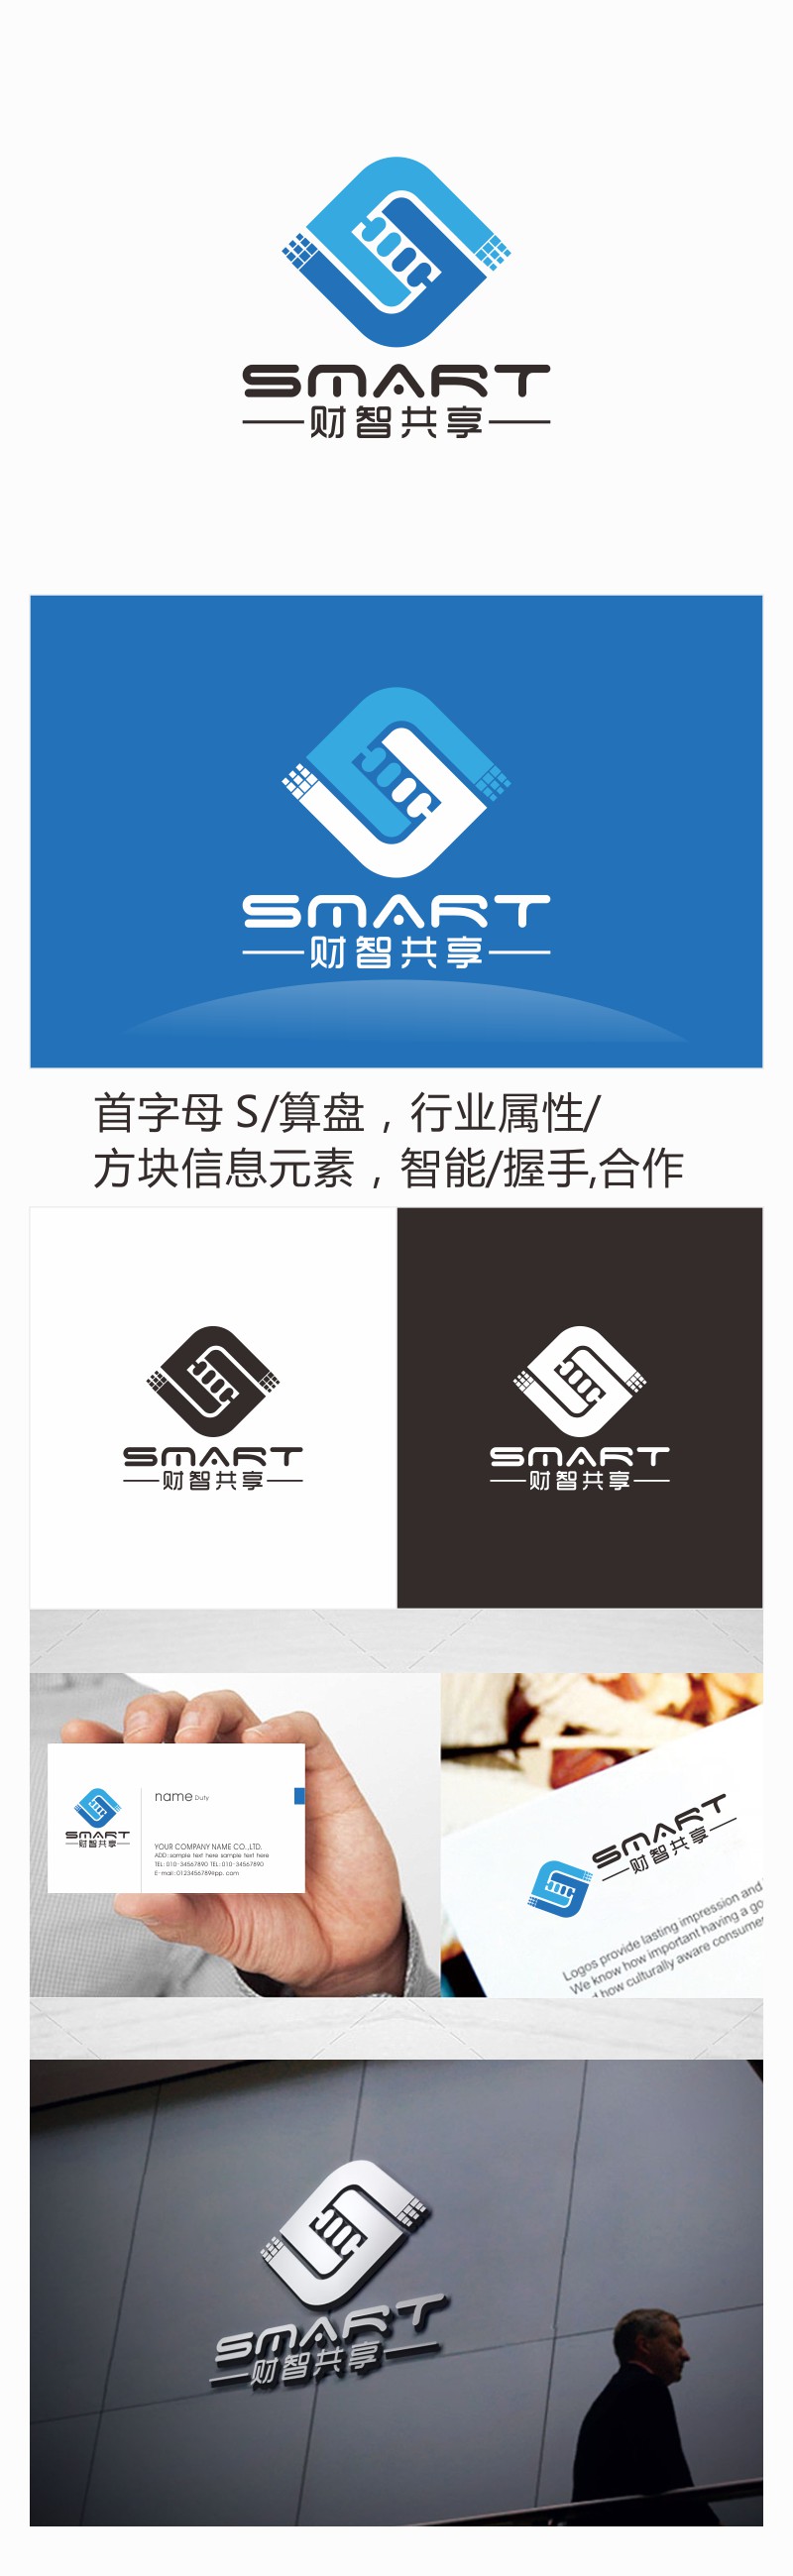 刘小勇的财智共享（北京）技术服务有限公司logo设计